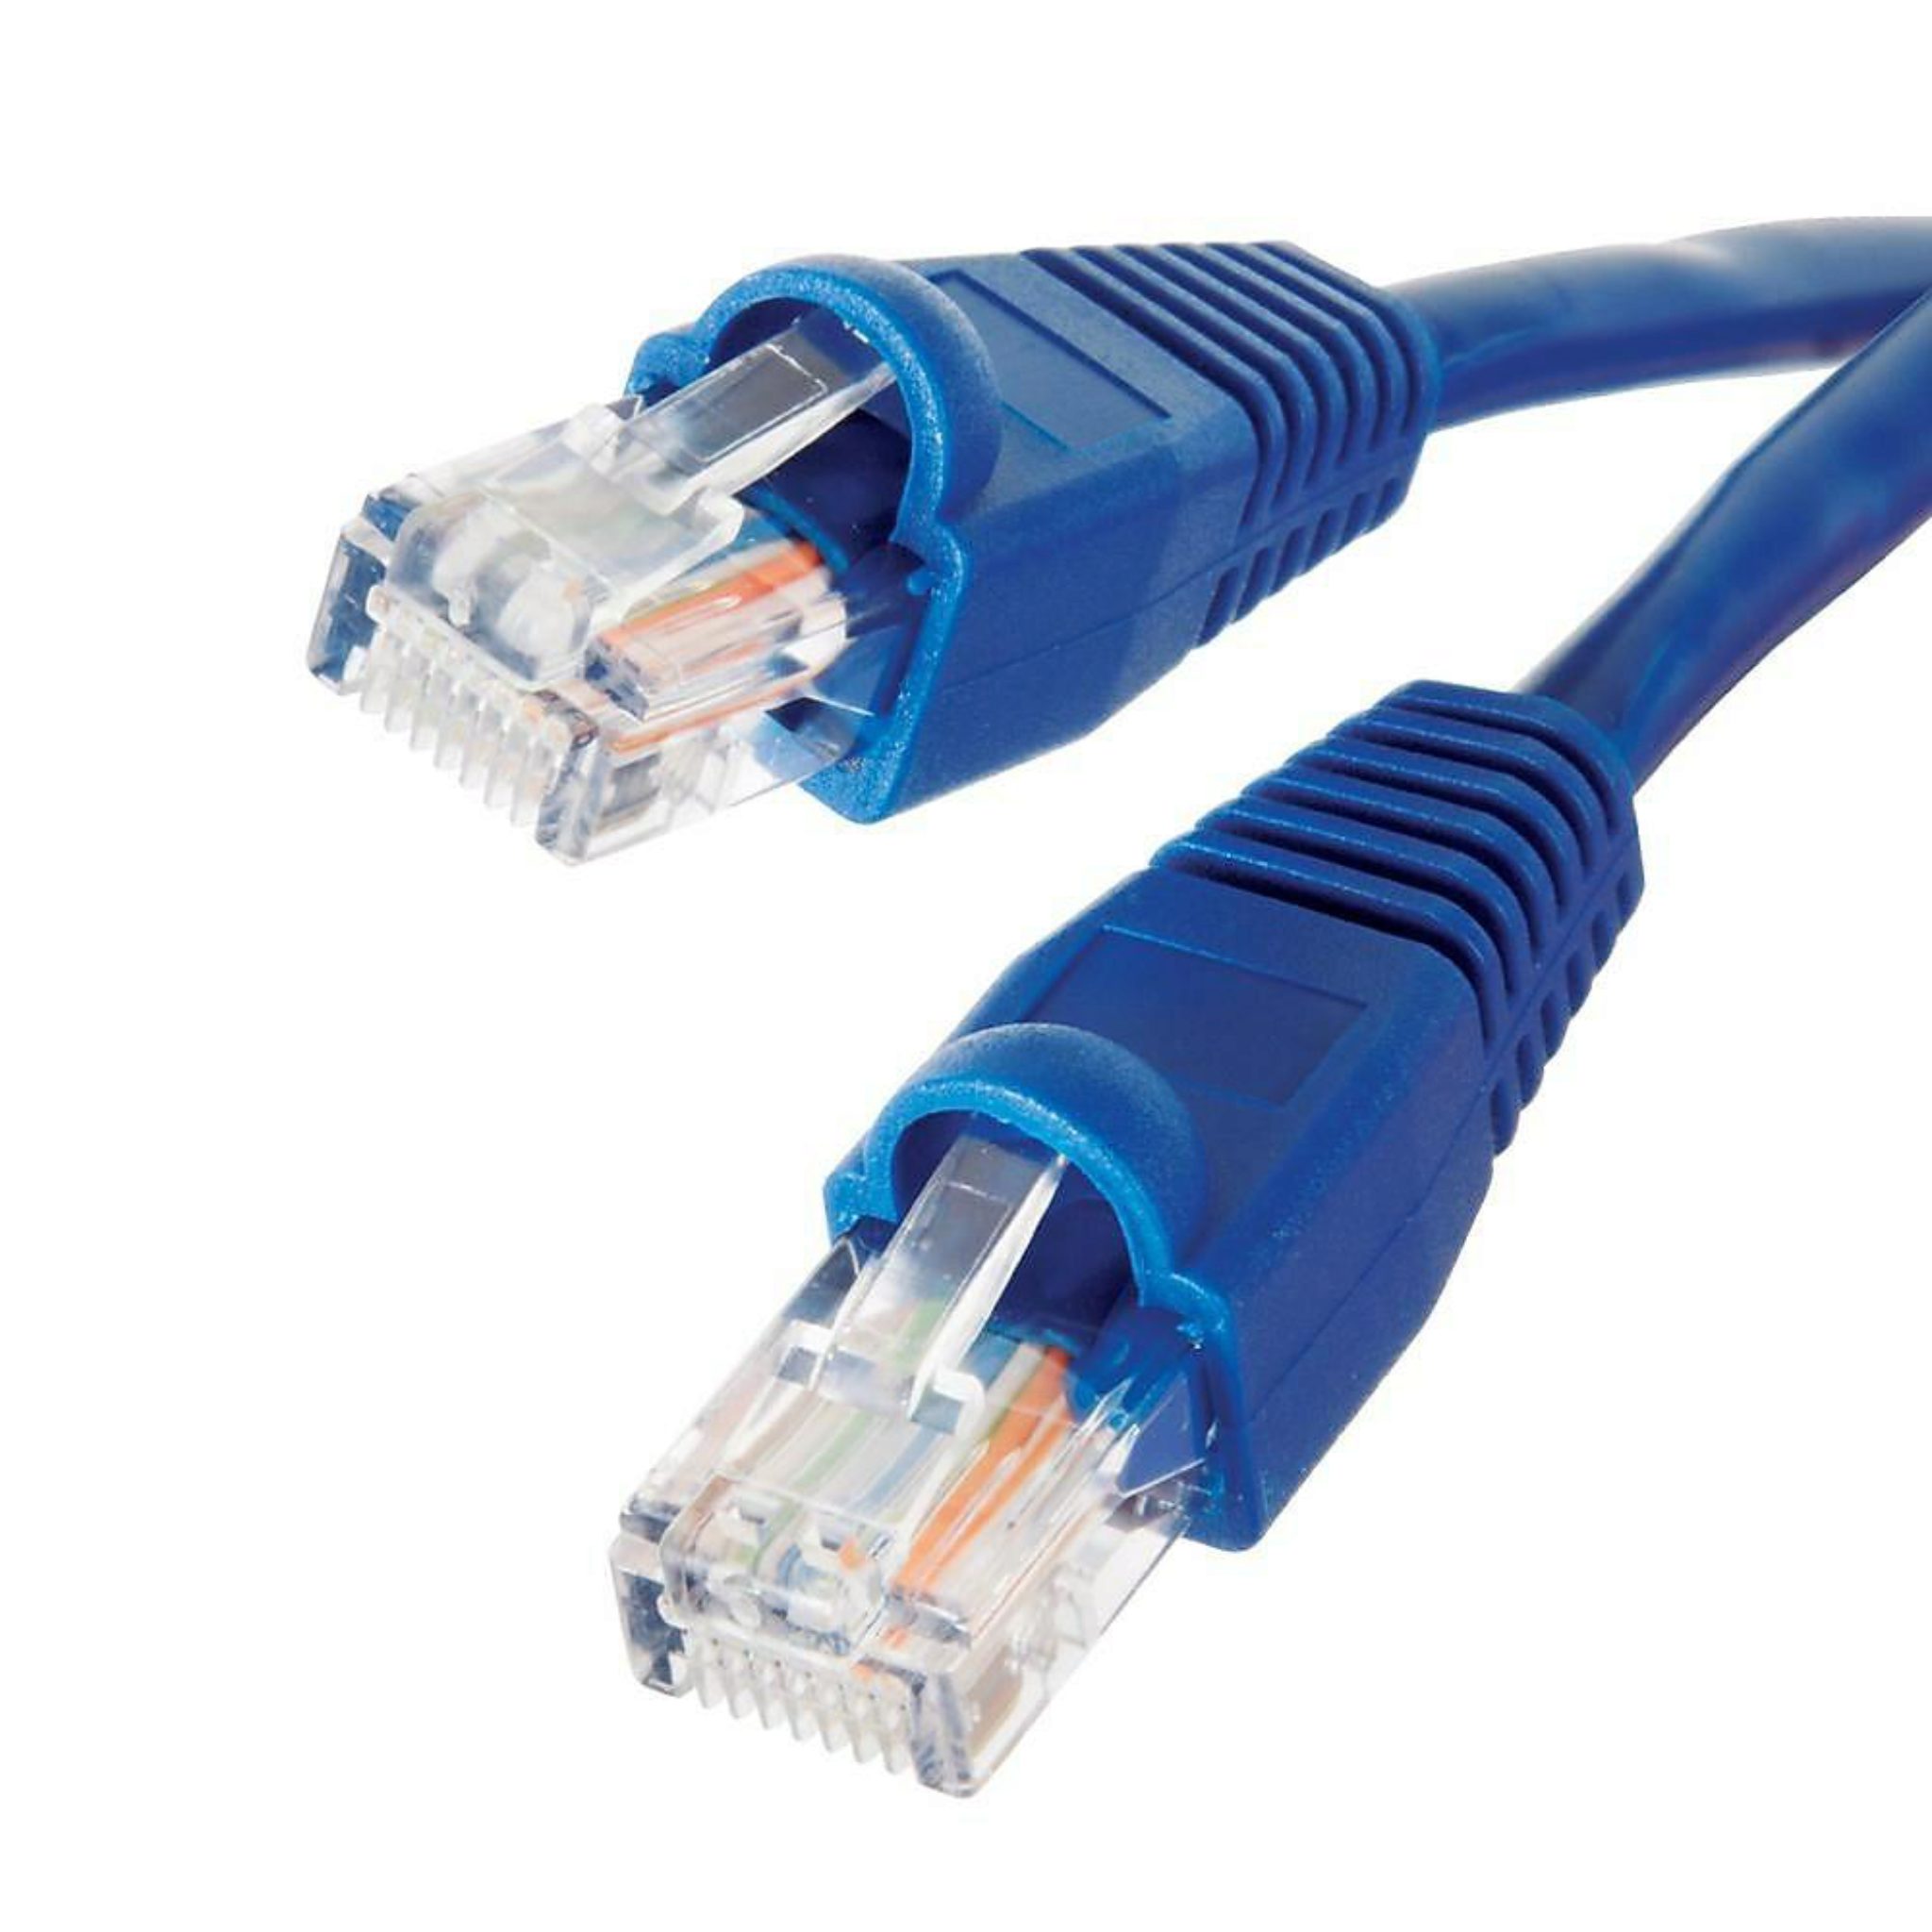 Câble Cat 6 Ethernet Plat 1000 Mo/s 350MHz Supporte Switch/Routeur/Modem/TV Box/PC/Xbox/PS3/PS4 amélioré CAT6 10m de Câble Réseau Noir 100% Fil de Cuivre avec Cable Clips !!! 